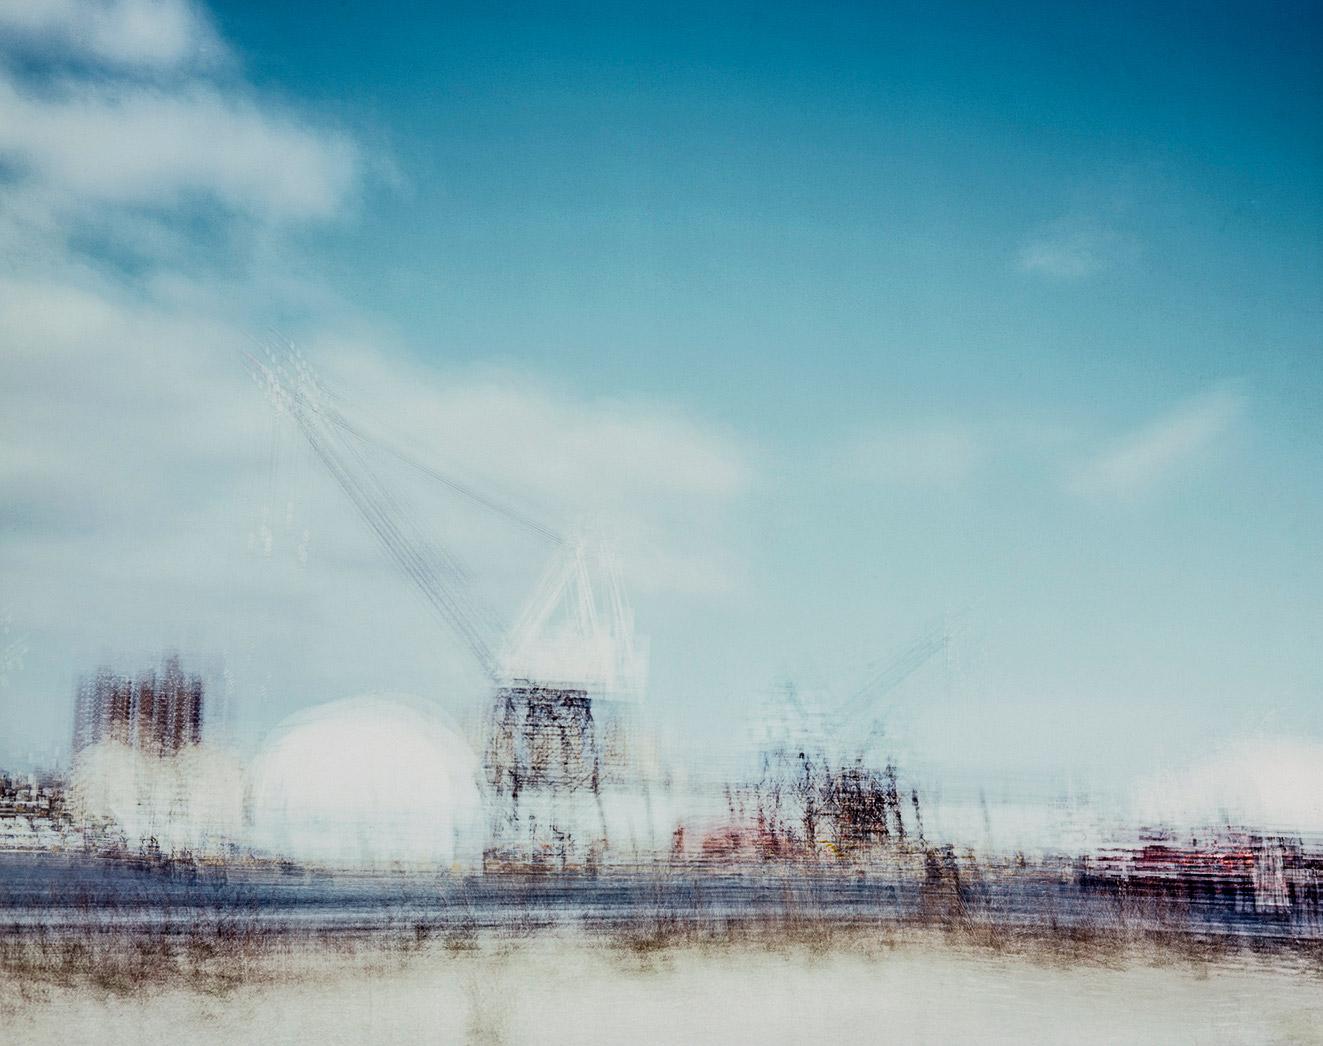 Poby Abstract Photograph – Brooklyn Yard in Marineblau